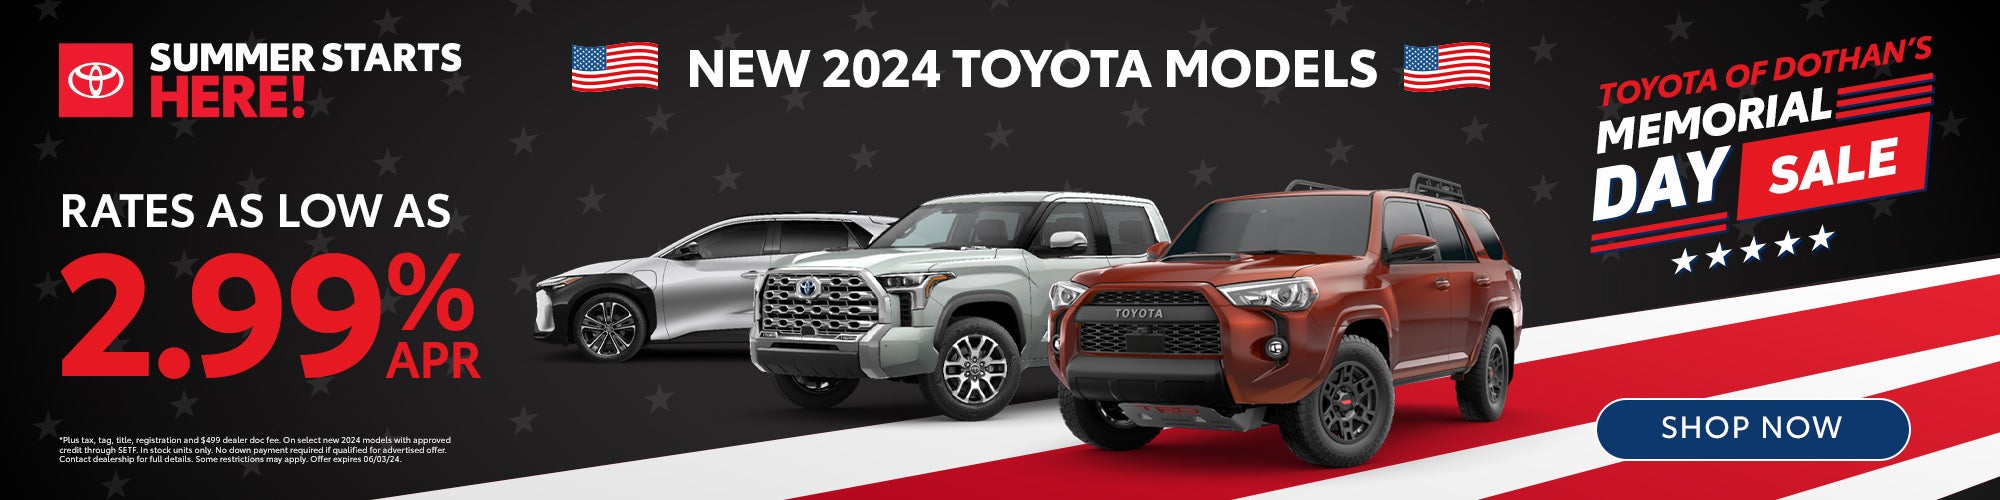 New 2024 Toyota Models